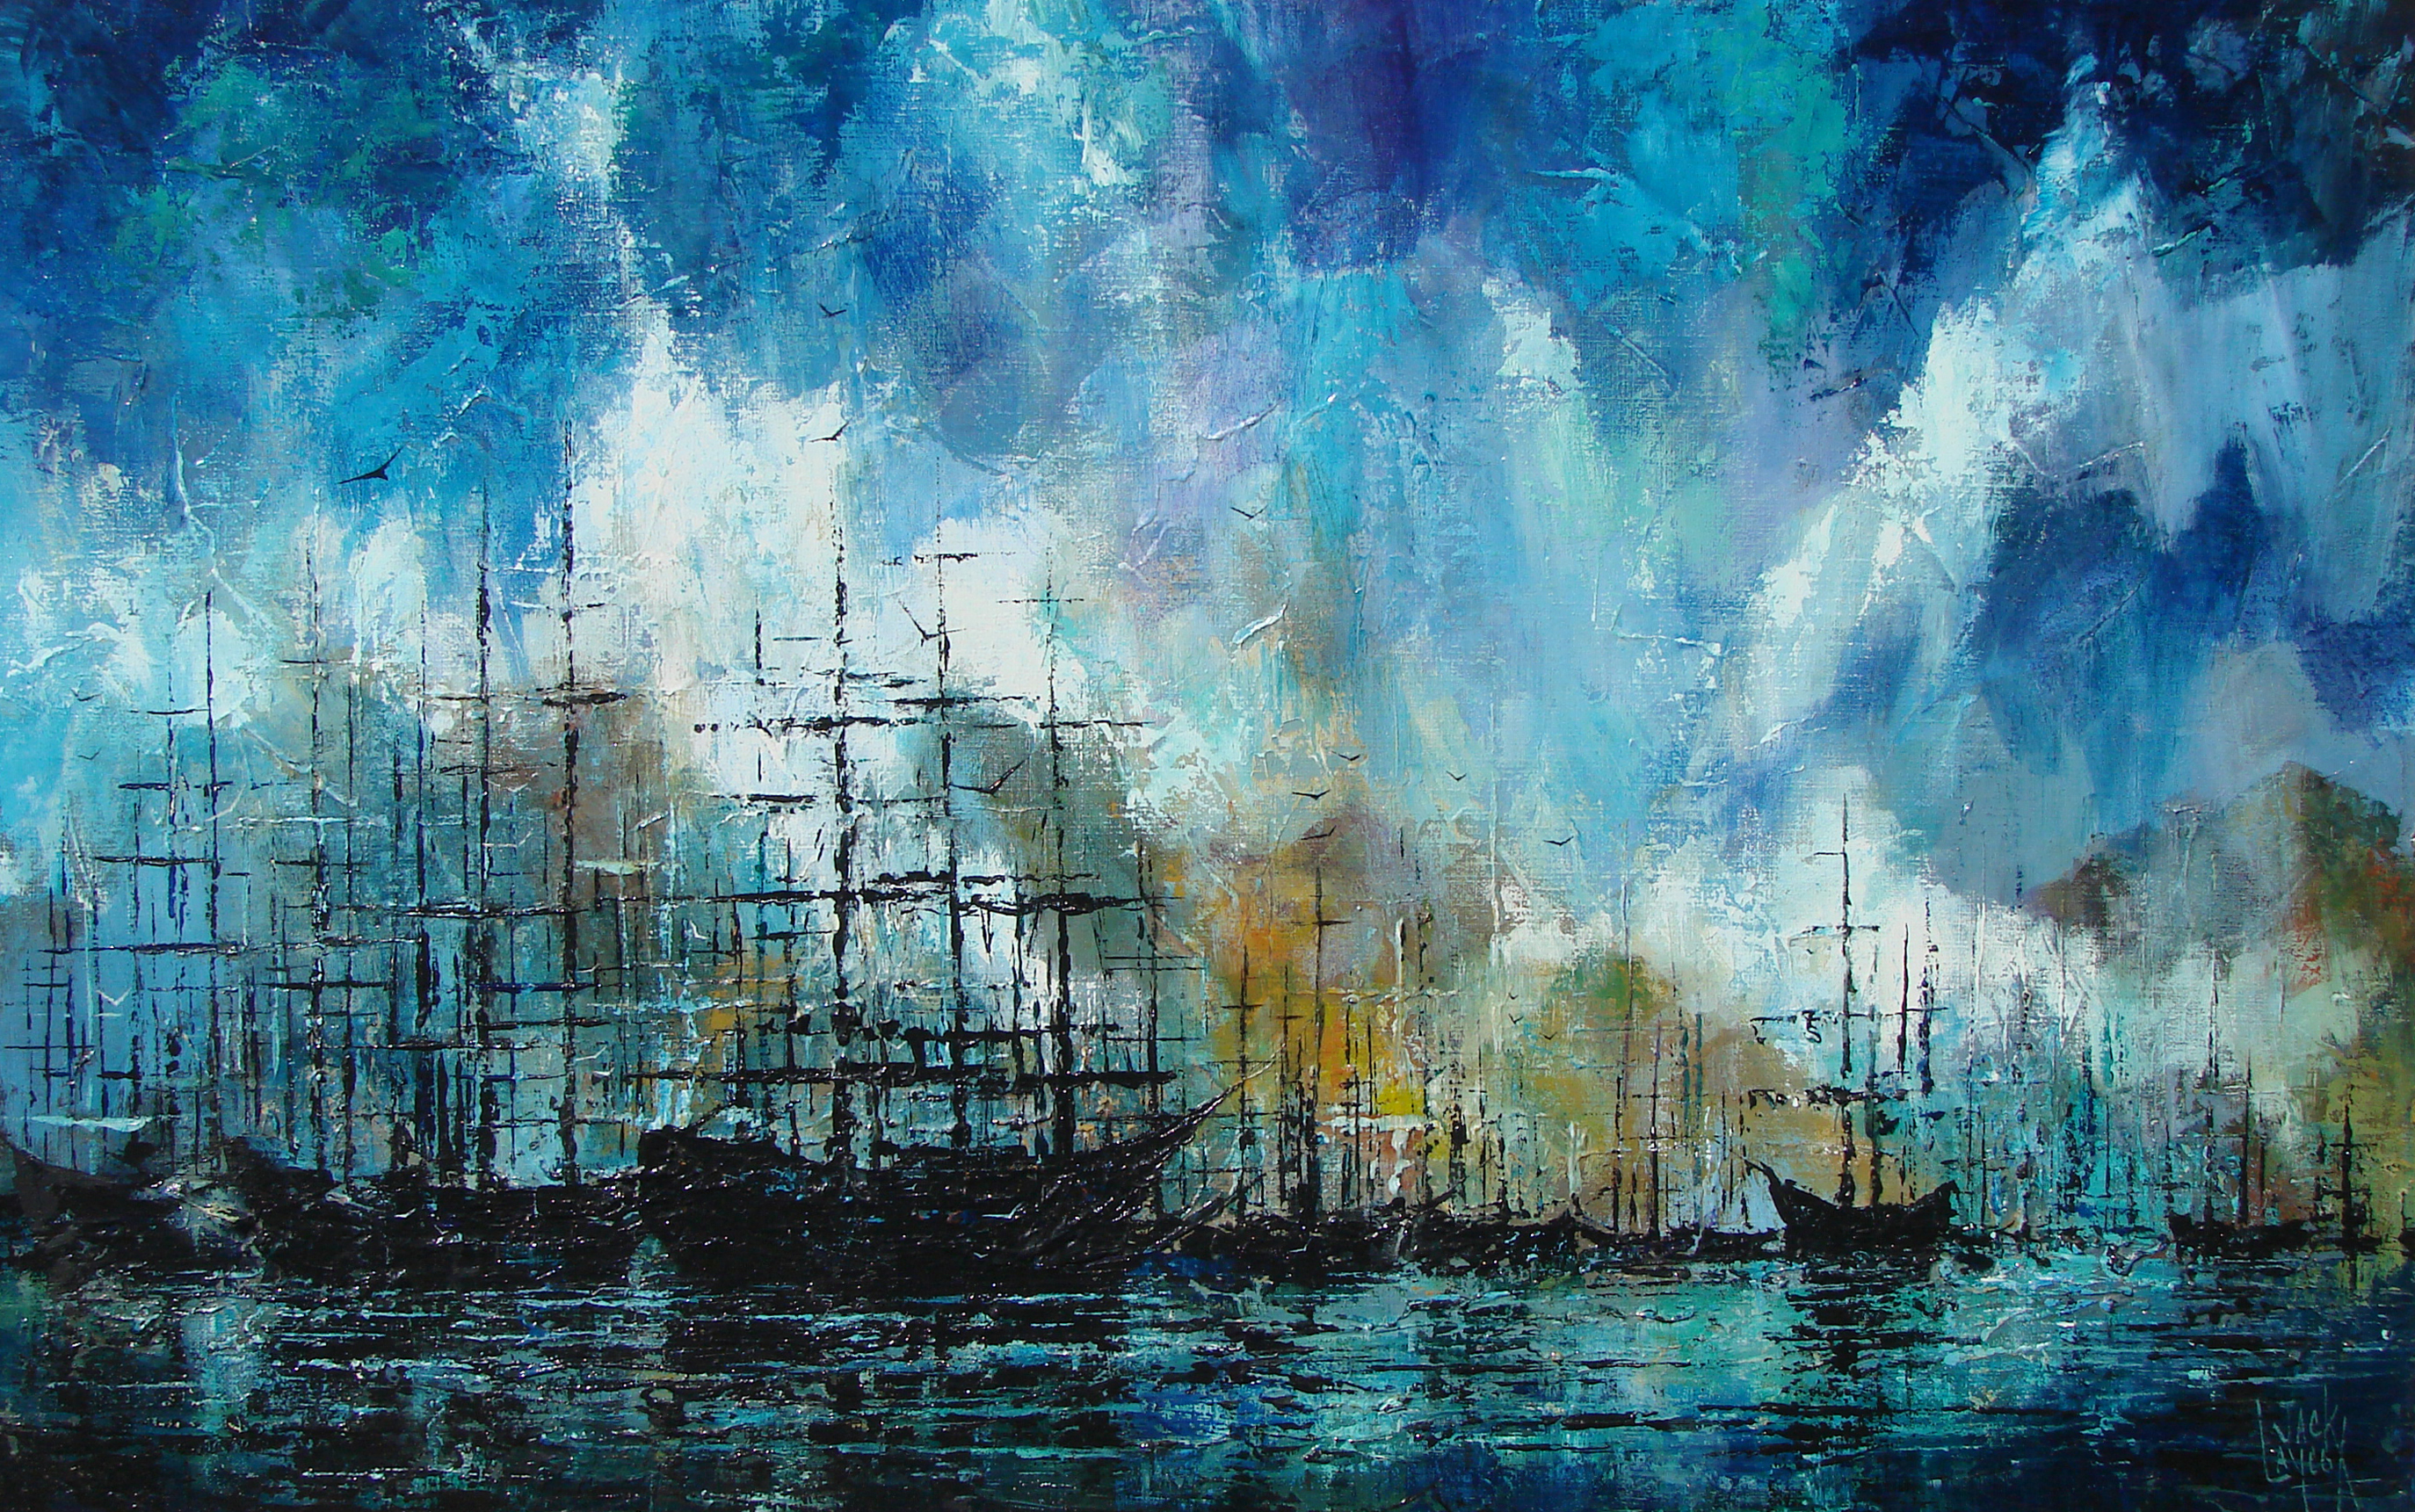 Jack Laycox - "Abandoned Fleet"